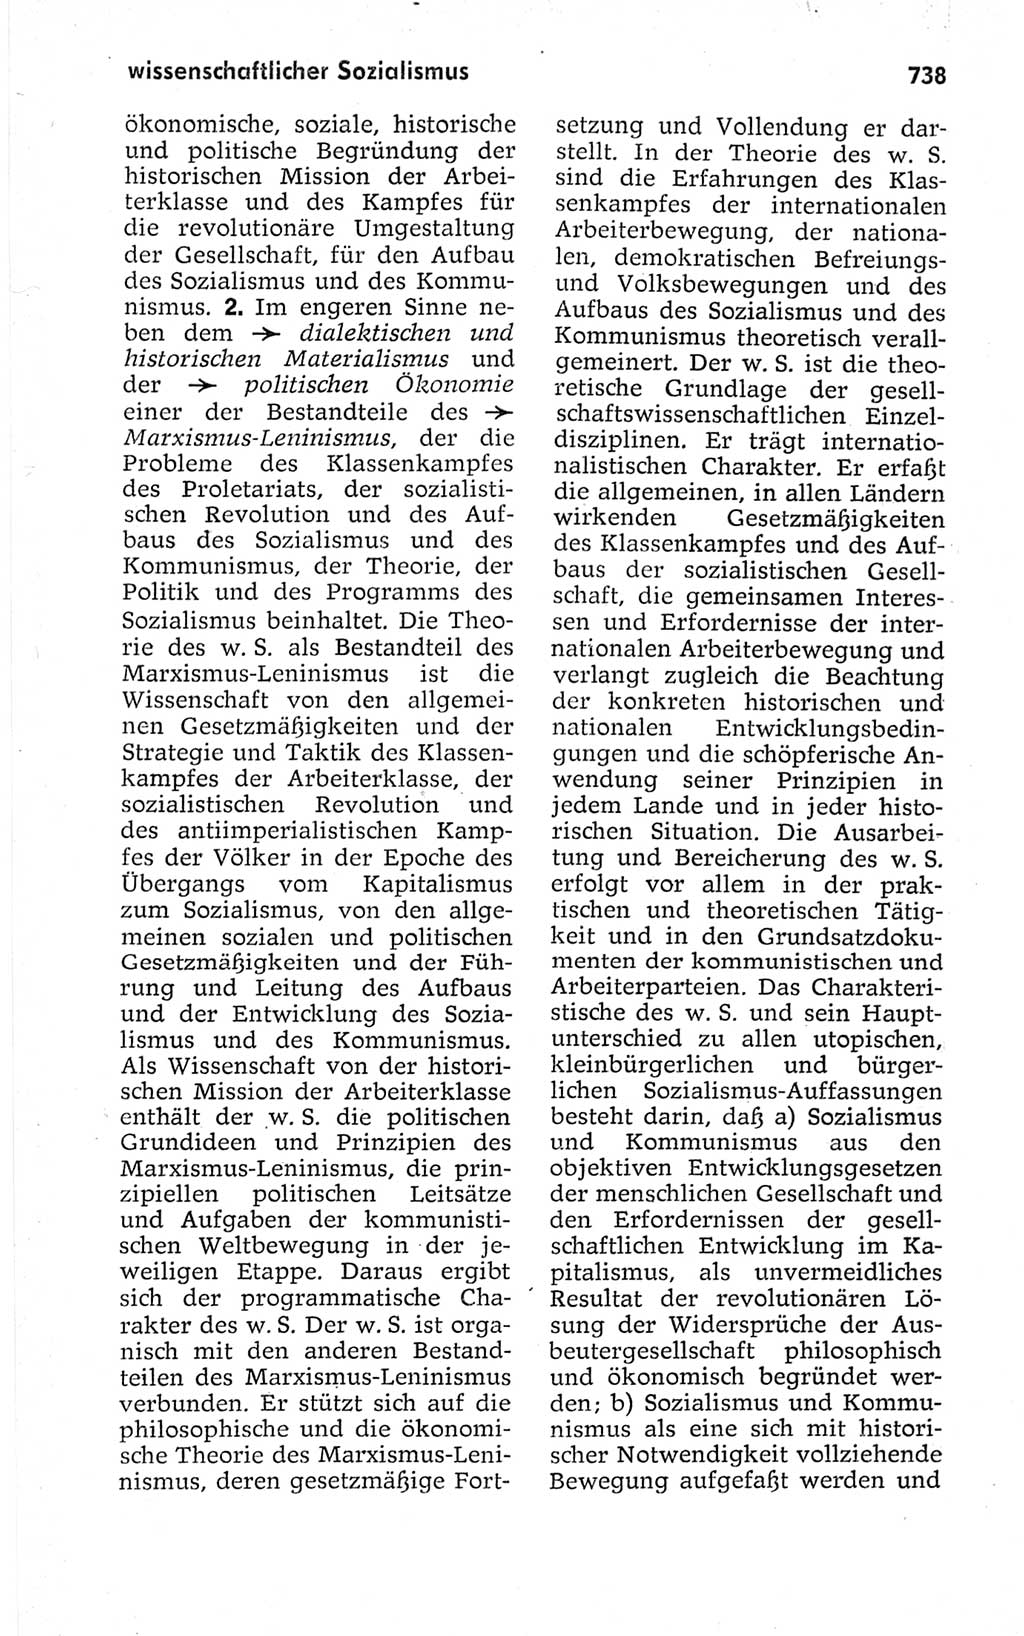 Kleines politisches Wörterbuch [Deutsche Demokratische Republik (DDR)] 1967, Seite 738 (Kl. pol. Wb. DDR 1967, S. 738)